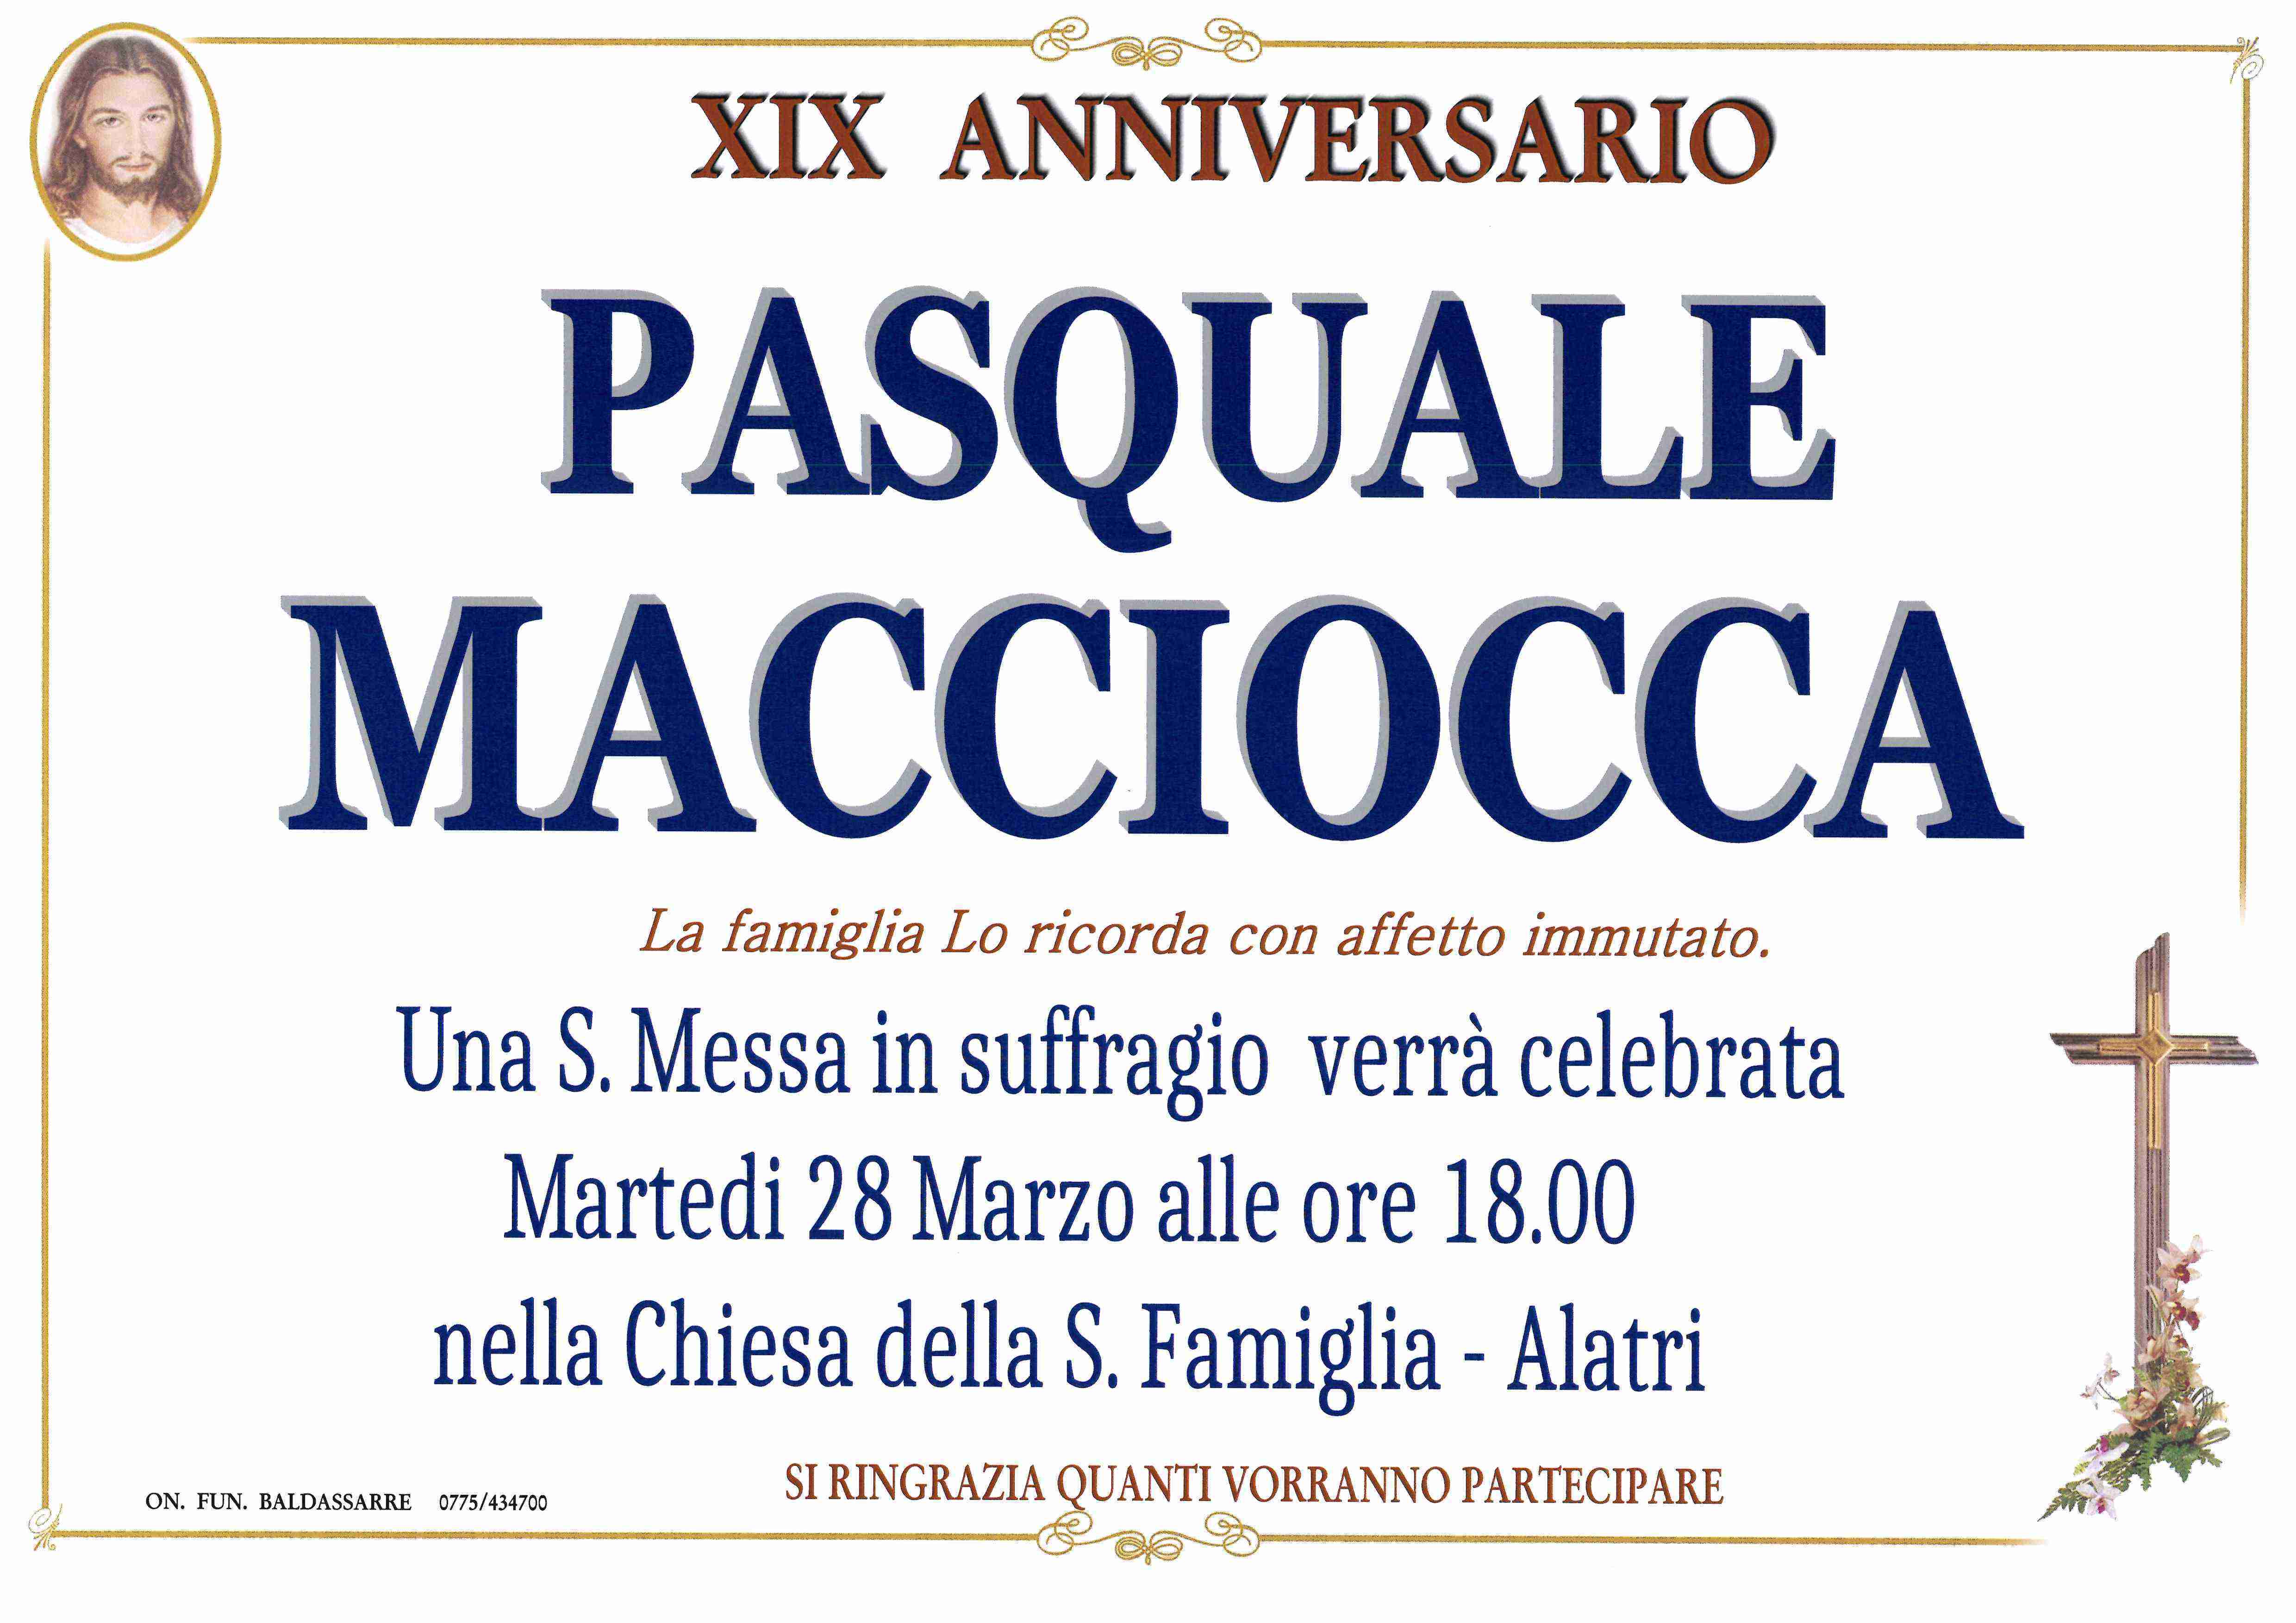 Pasquale Macciocca